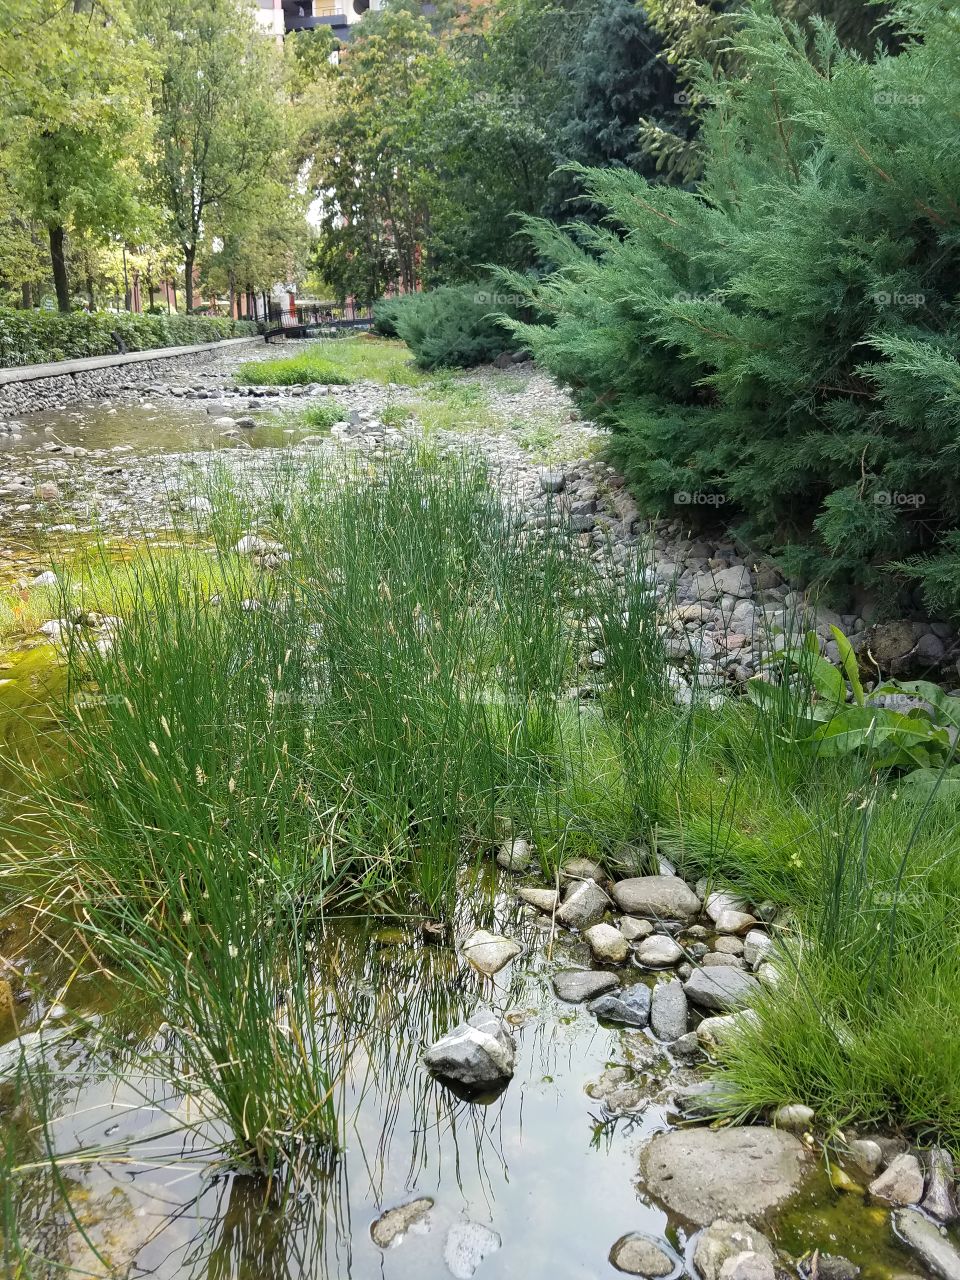 tall grass in a stream in the dikman vadesi park in Ankara Turkey